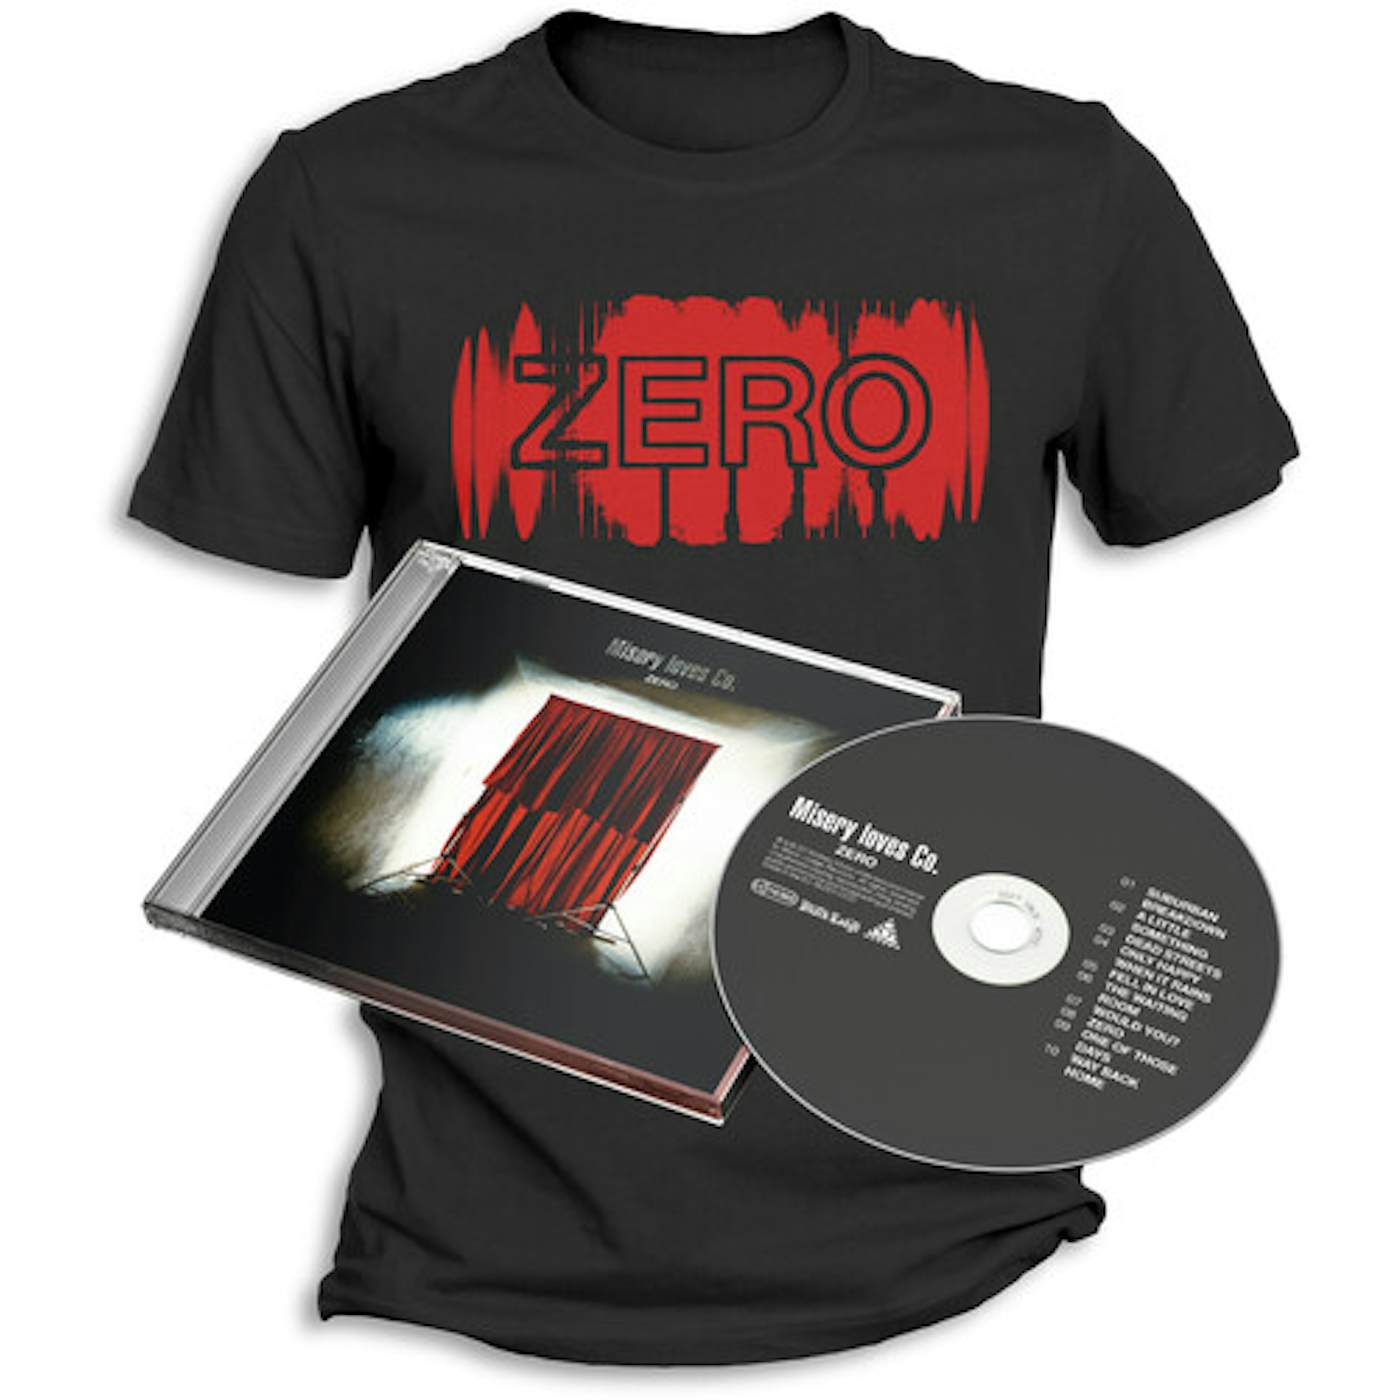 Misery Loves Co. ZERO + T-SHIRT (L) CD